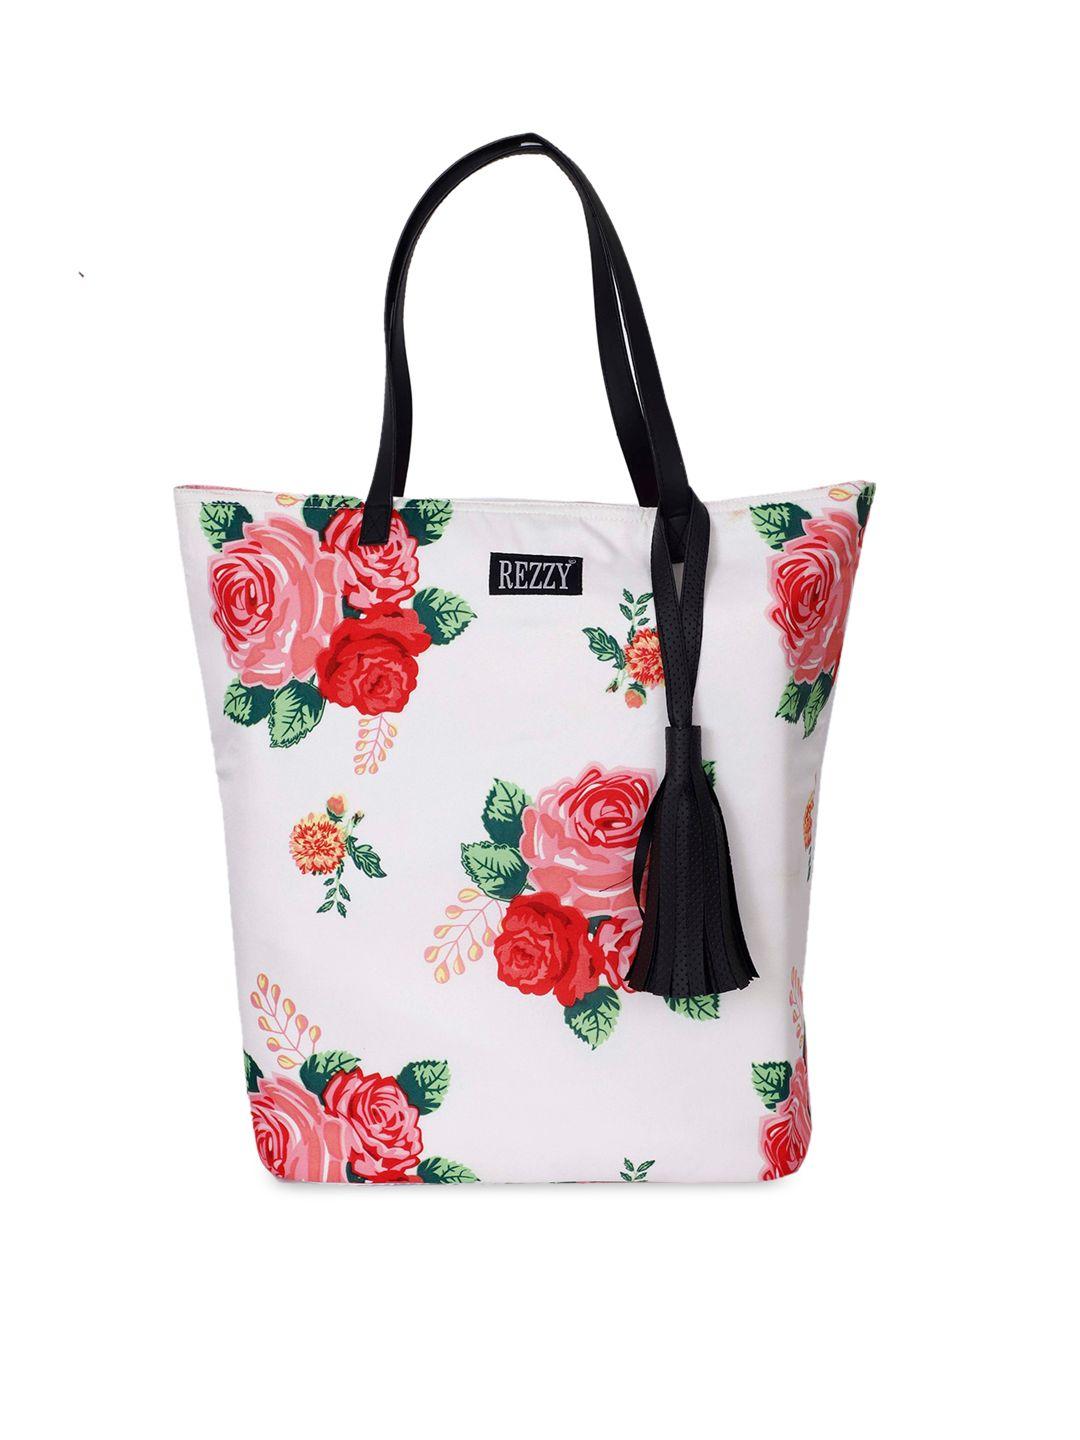 rezzy floral printed tasselled tote bag